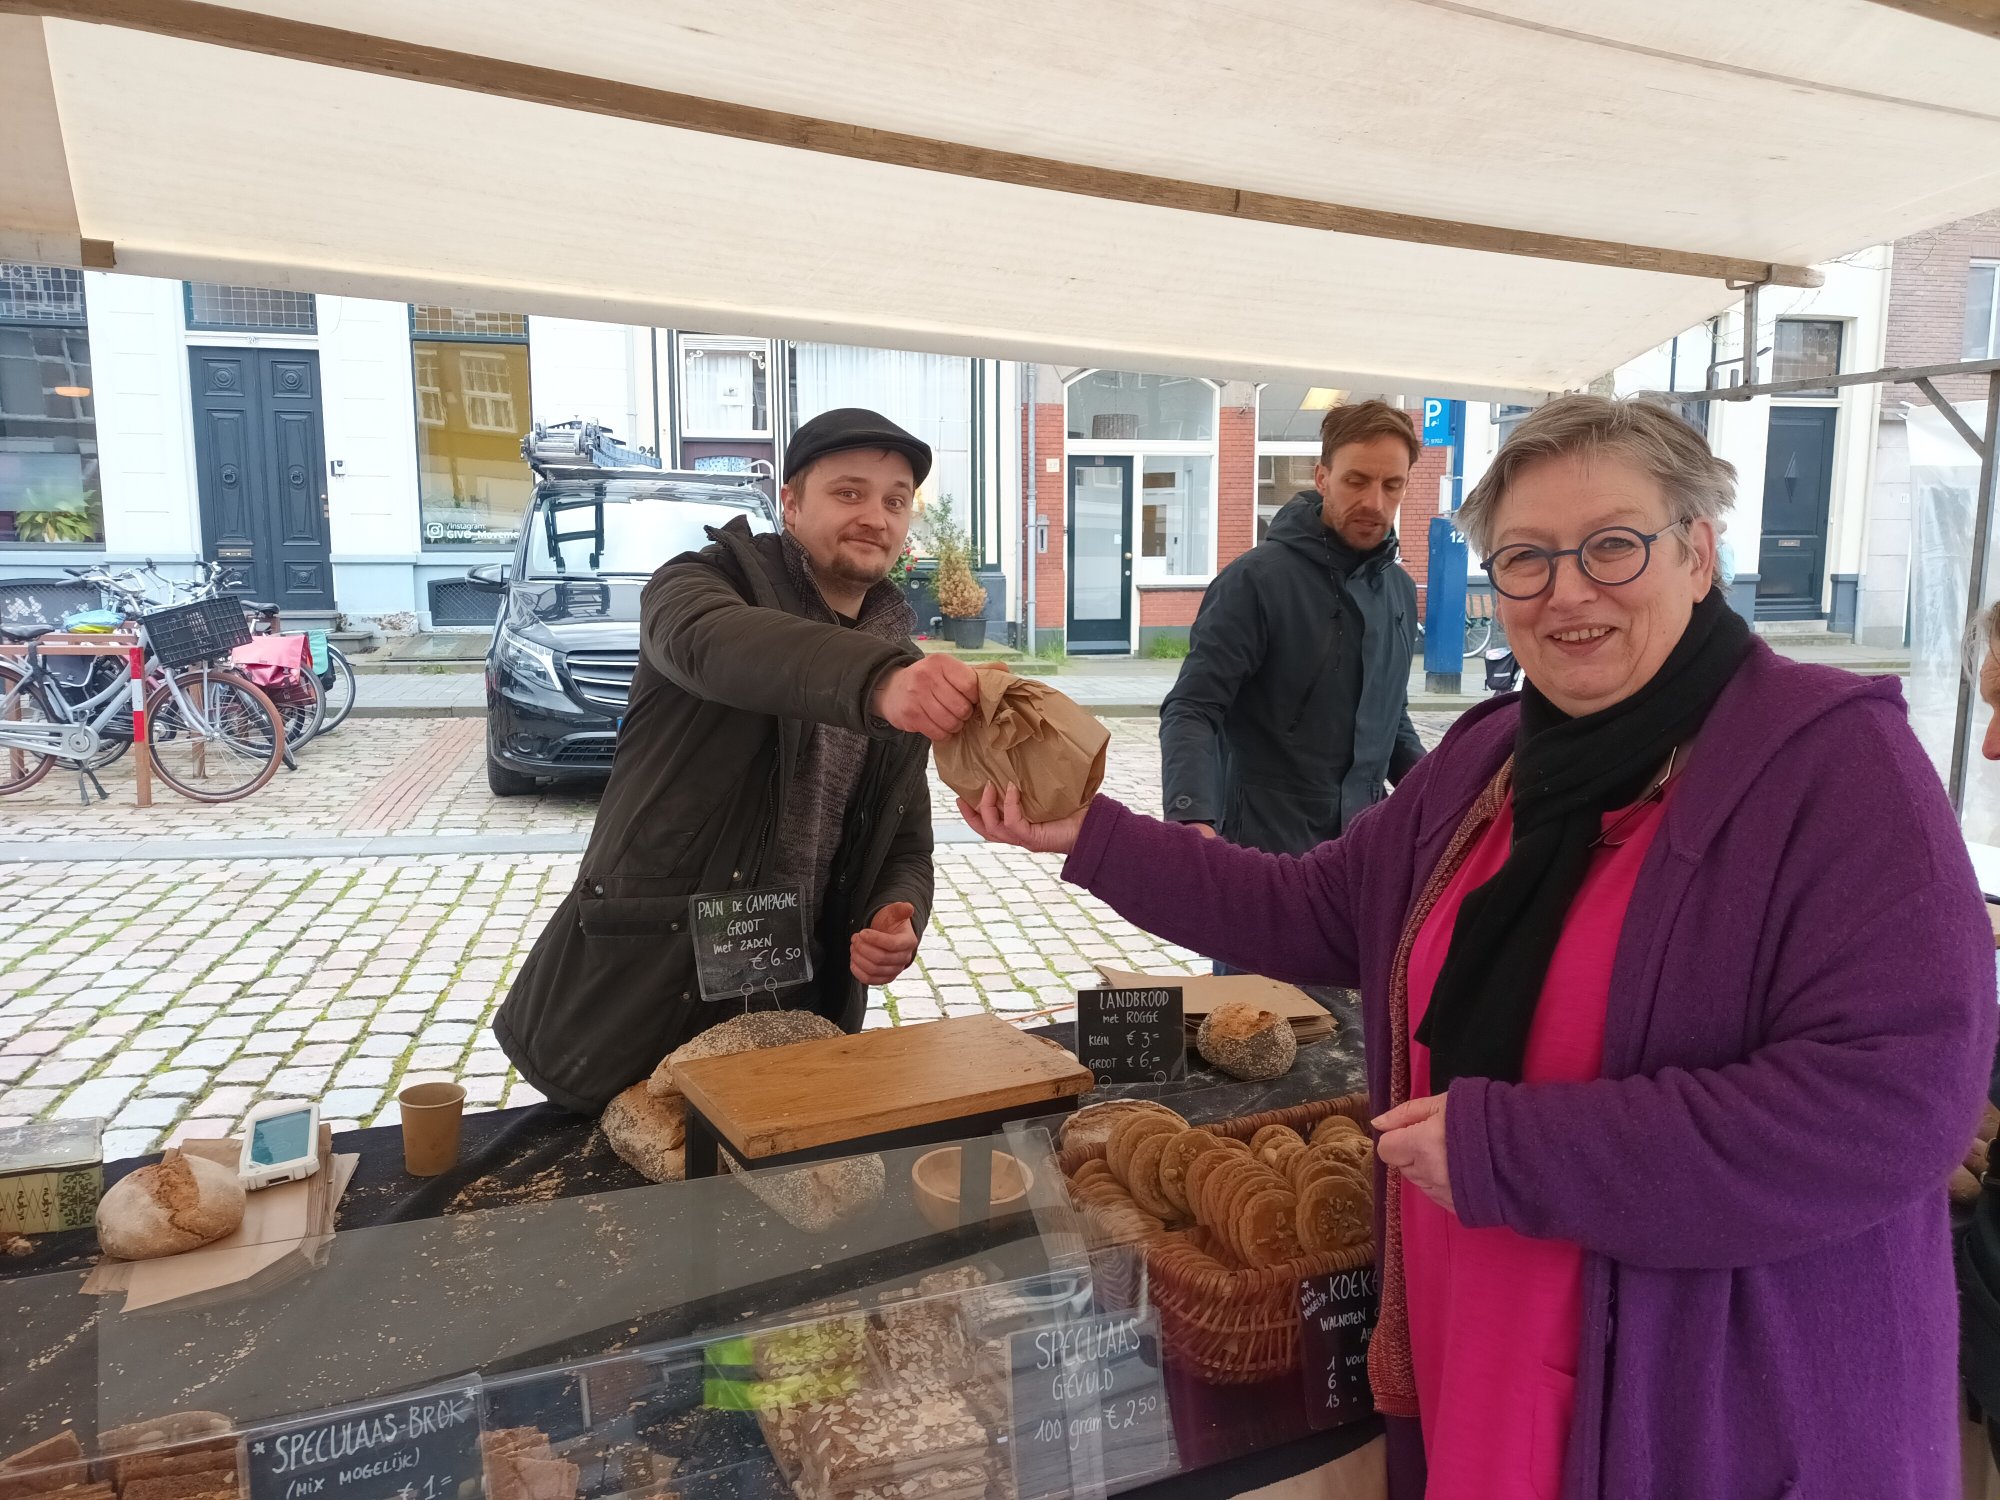 buurtkoelkast groot succes in zutphen: 'mensen fietsen om voor gratis eten'